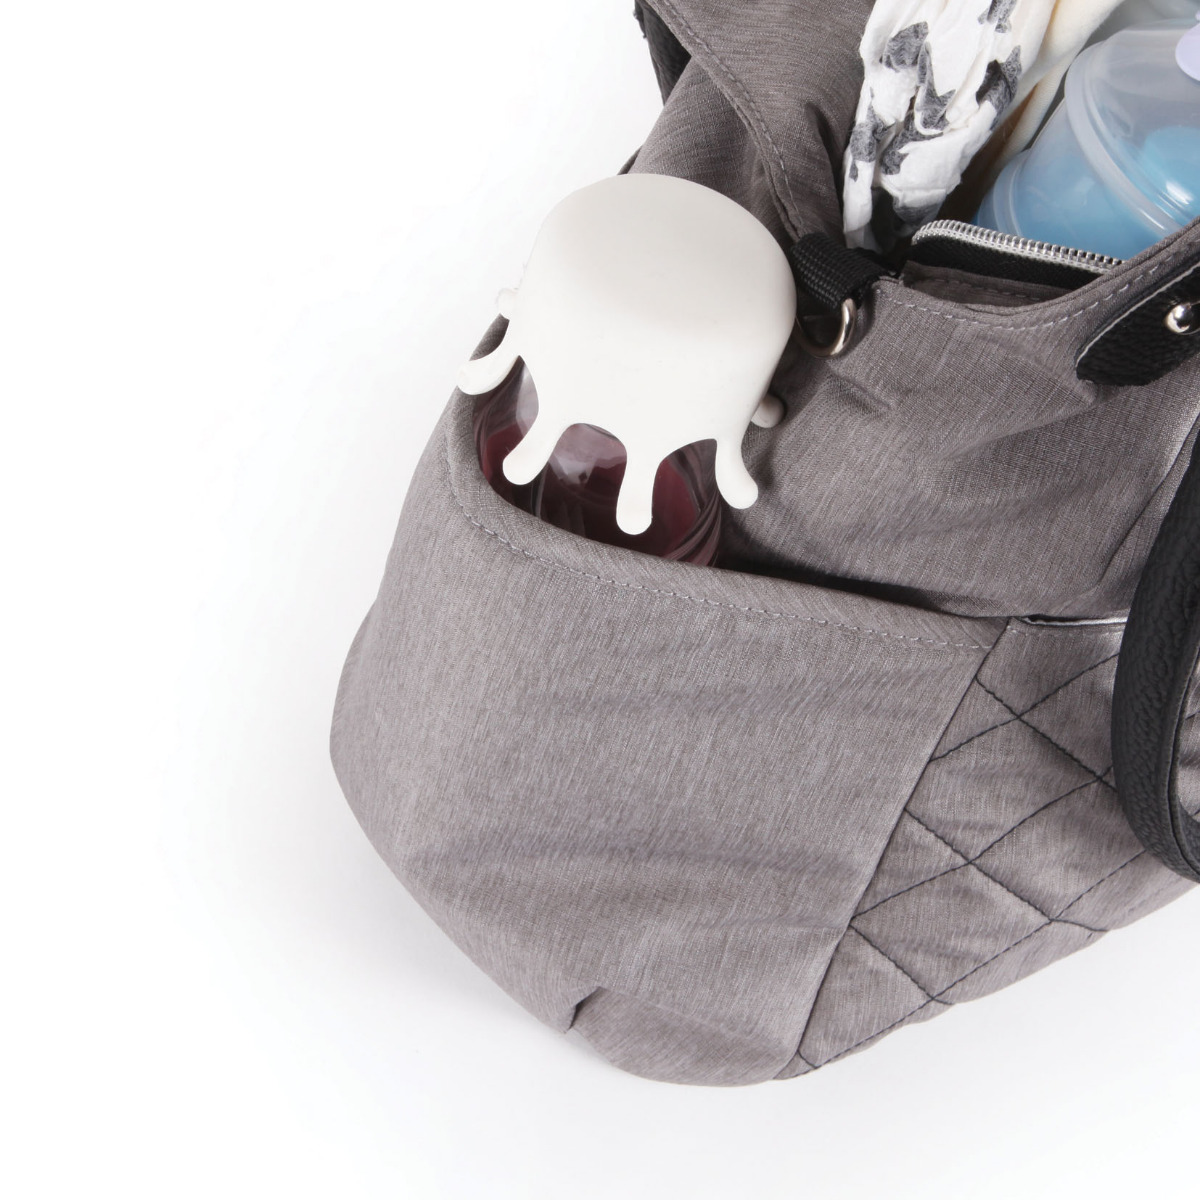 Geanta accesorii bebelusi, Qplay Tote, multiple compartimente, Light Grey image 5